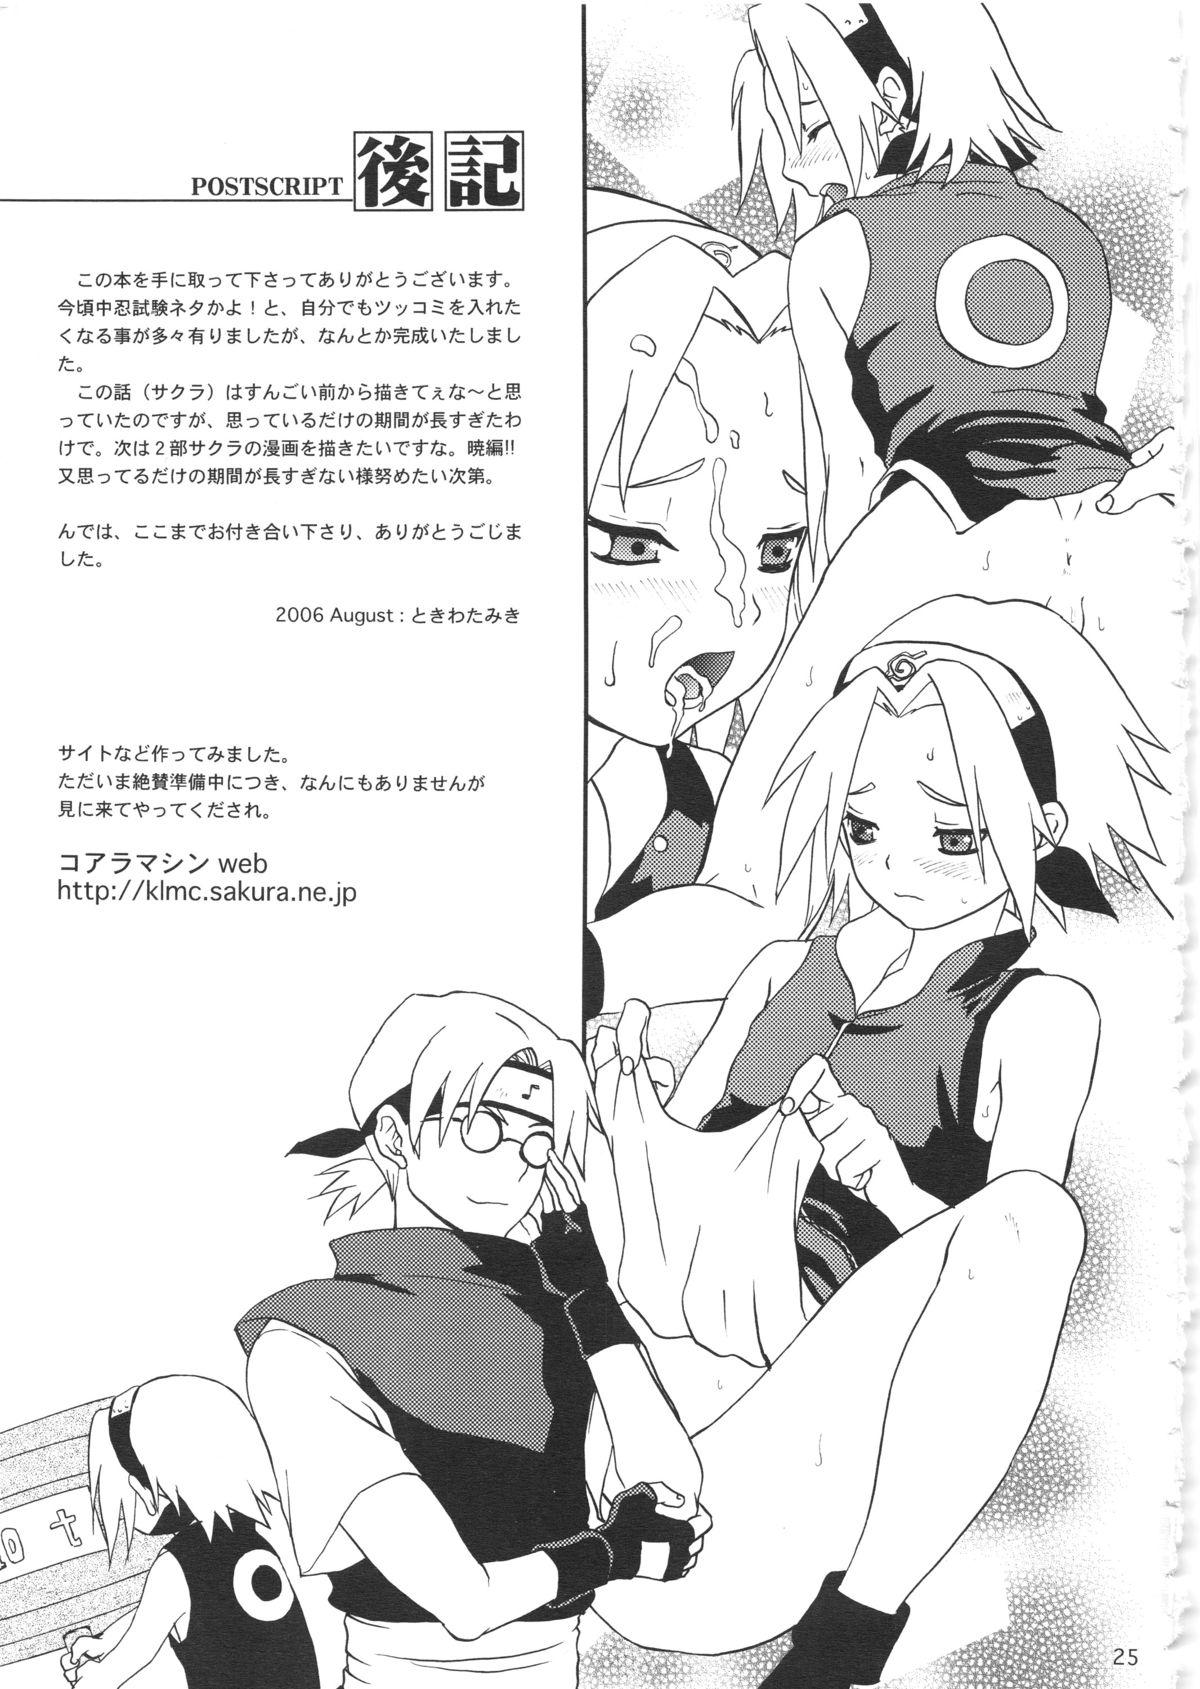 Verga Haru Machibito - Naruto Tiny - Page 25